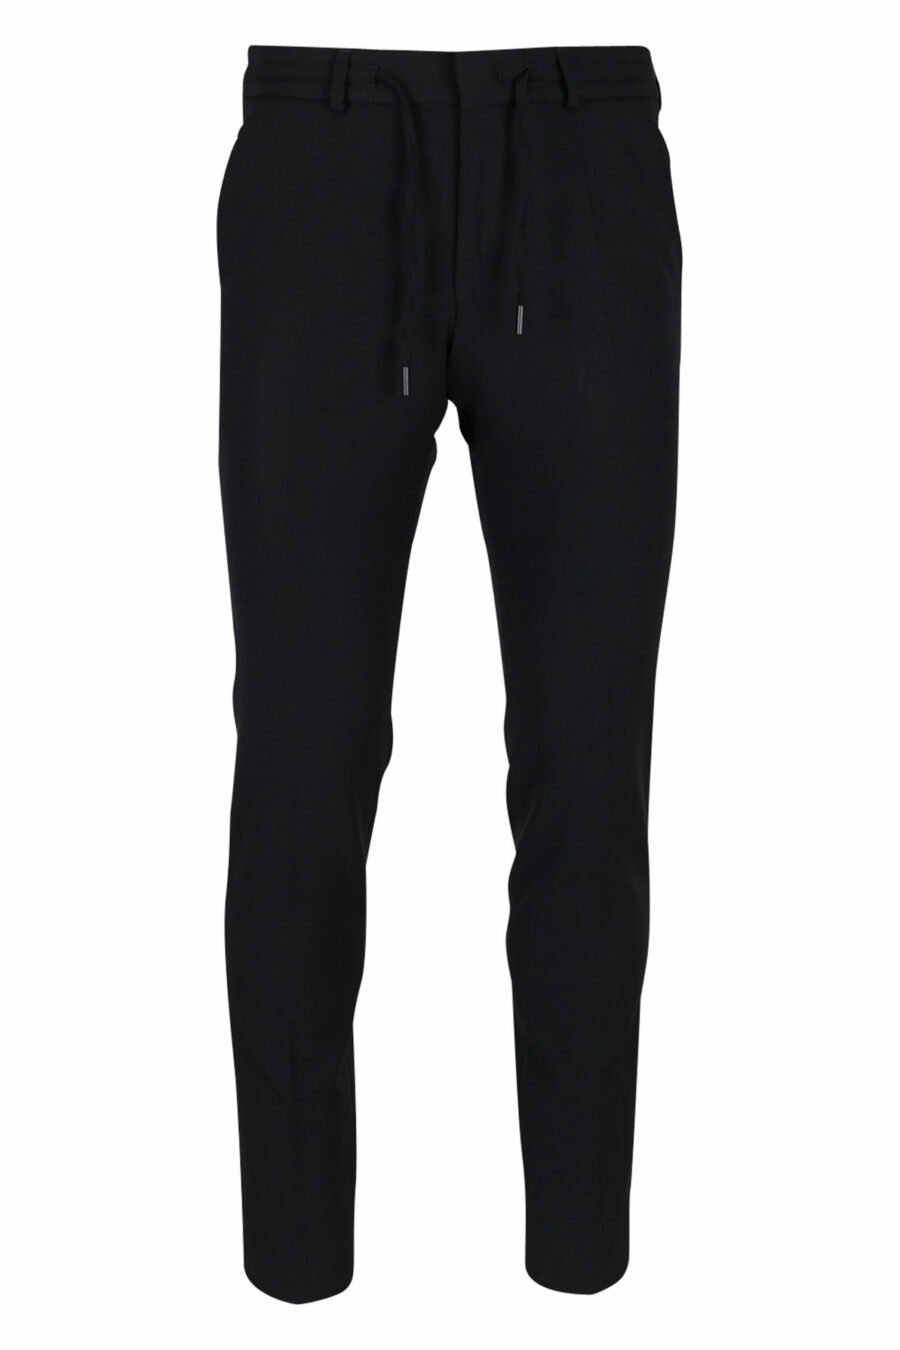 Pantalon noir avec mini-logo en caoutchouc - 4062226374224